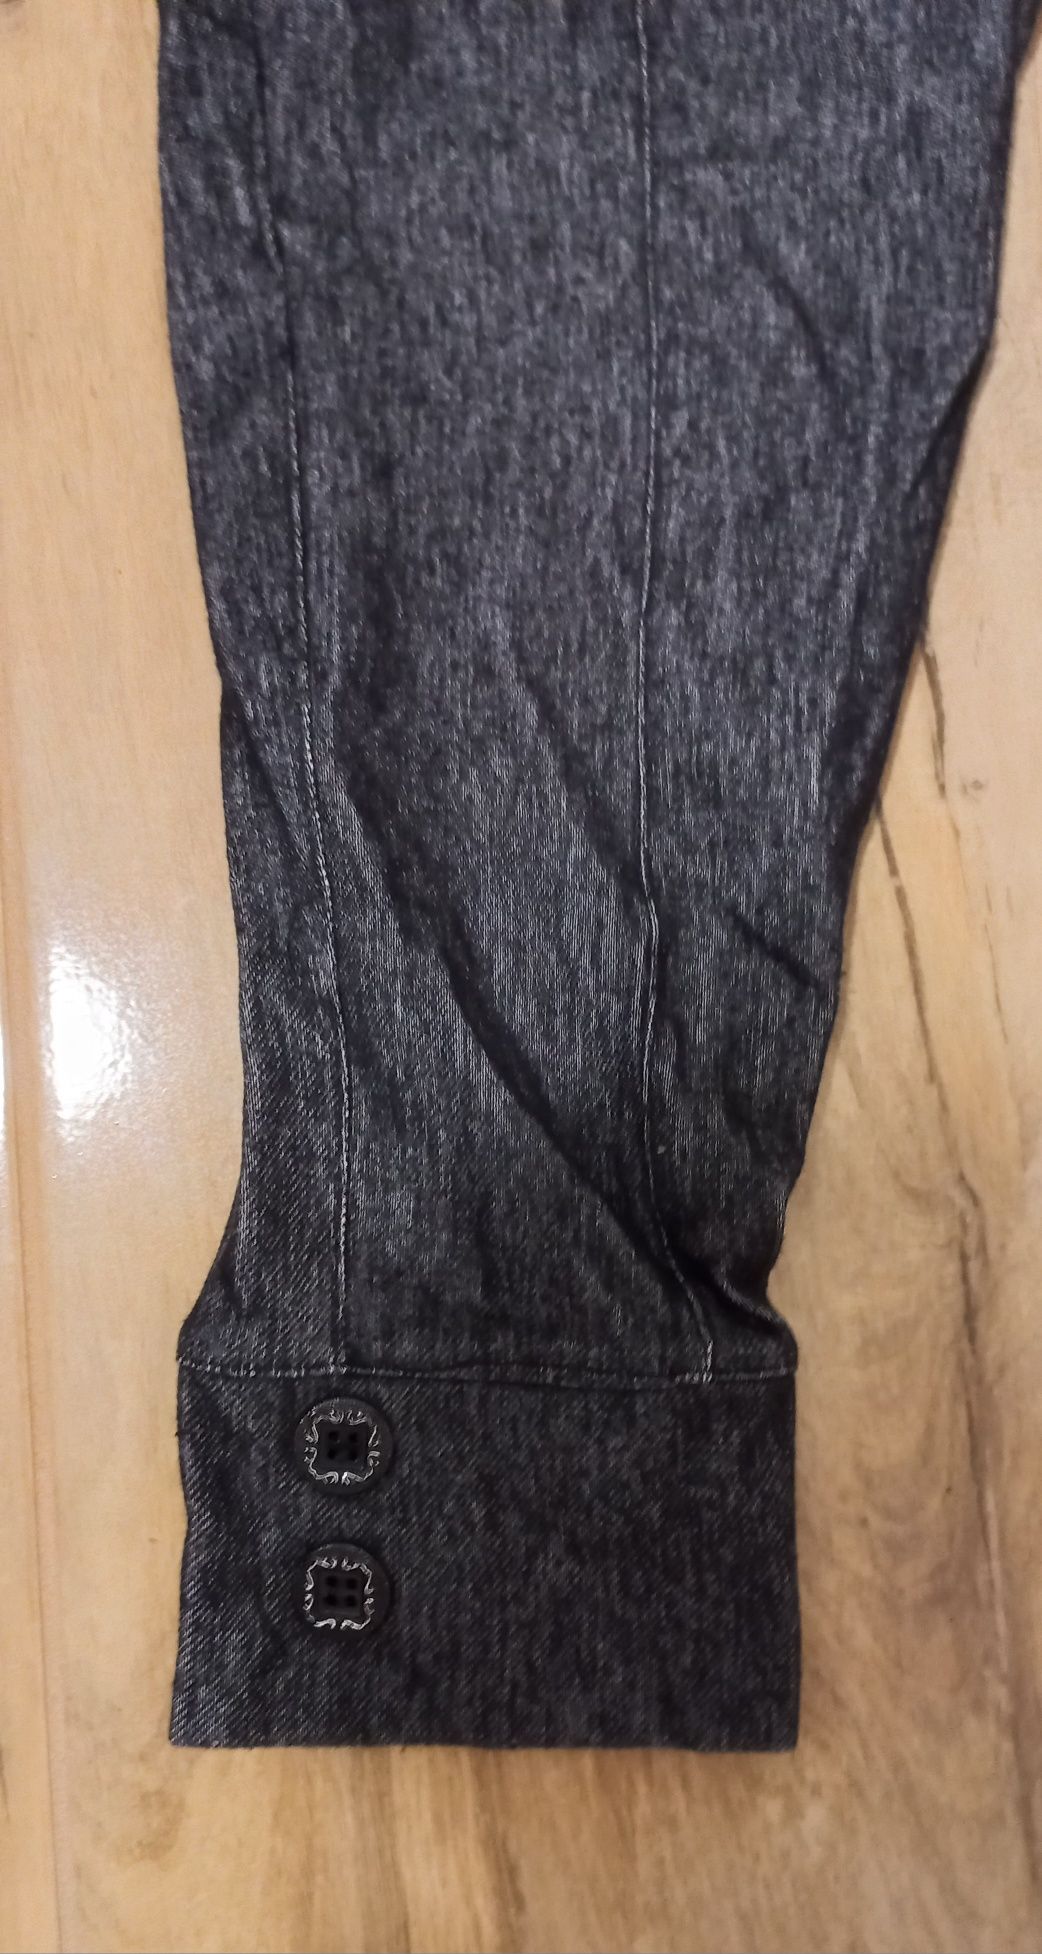 Nowe czarne imitacja jeans rybaczki M L Wysyłka 1zł